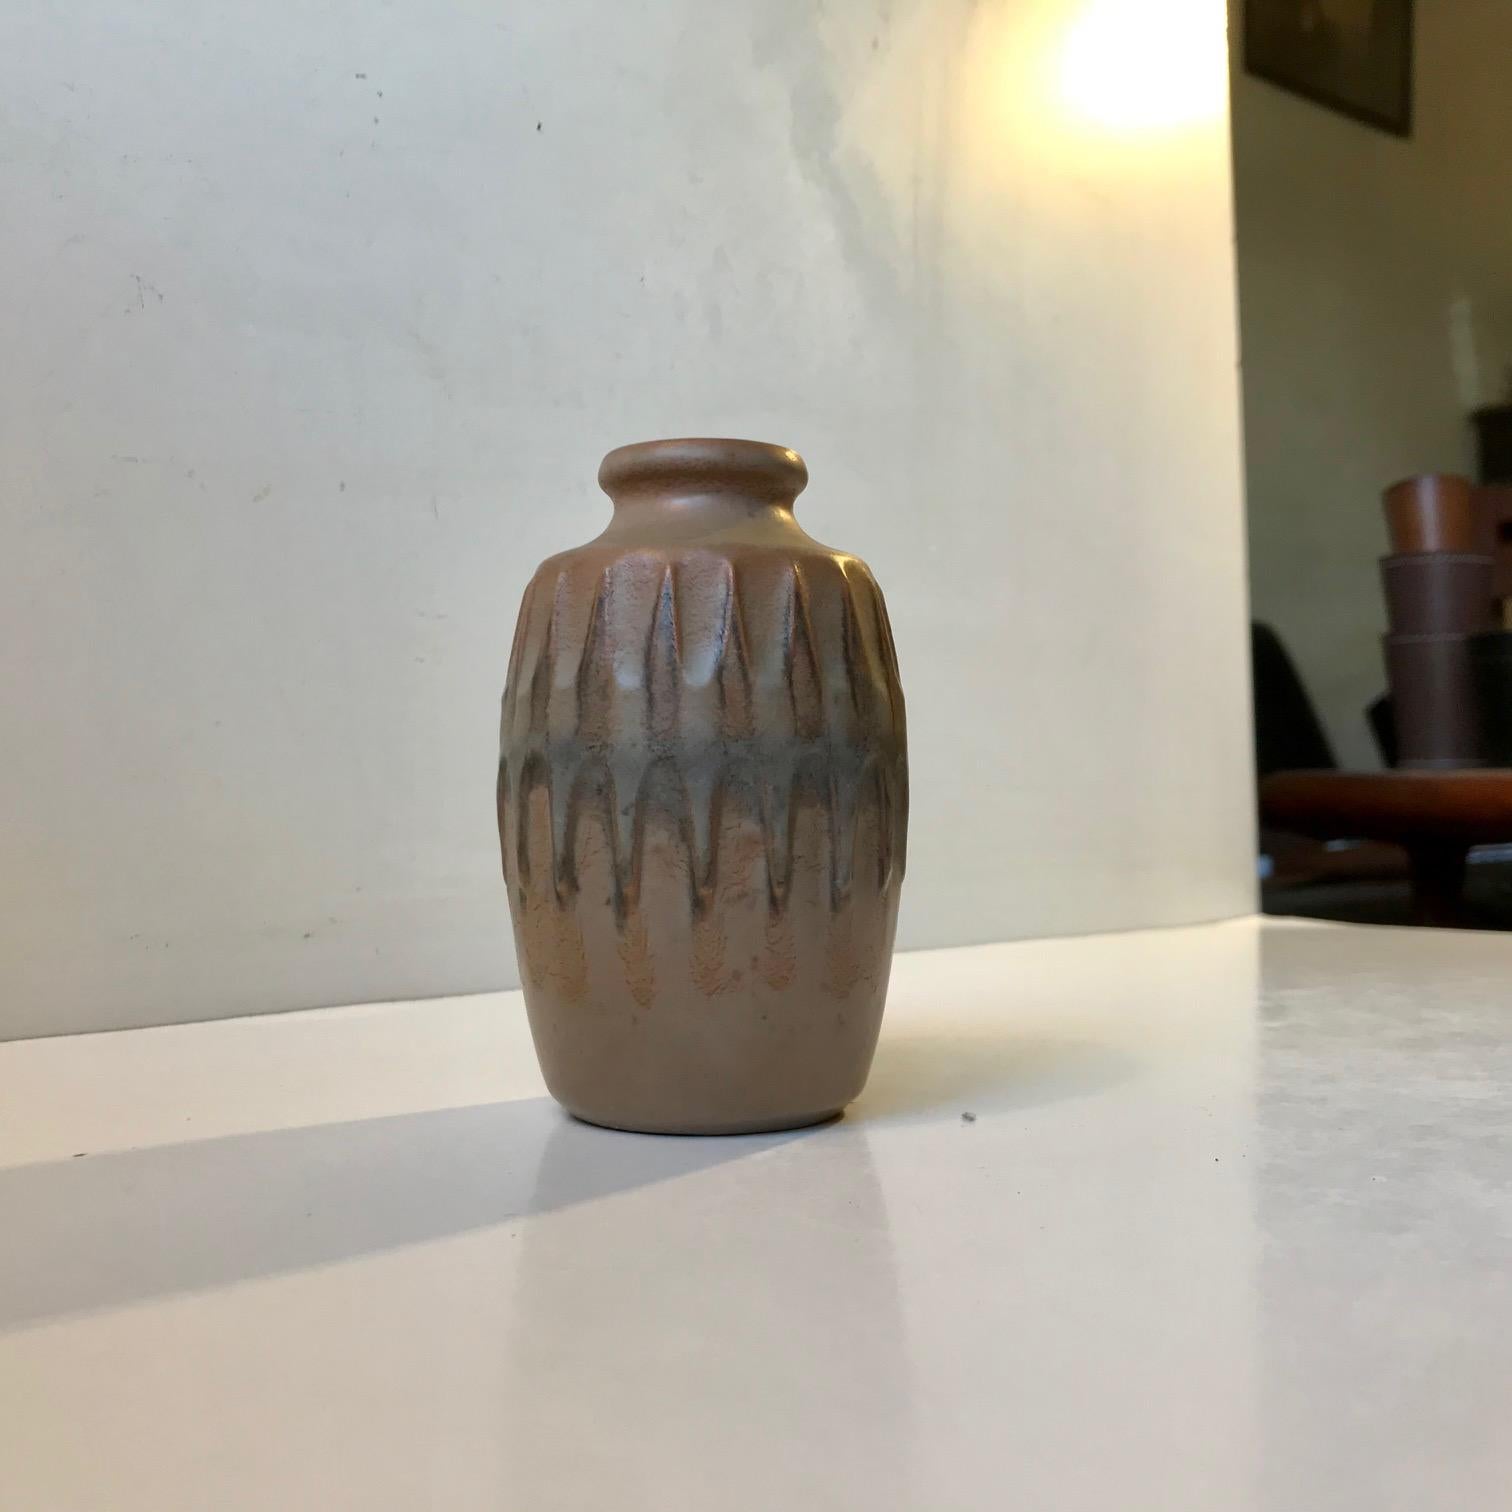 Vase en céramique aux glaçures de camouflage subtilement/semi-matées conçu par le céramiste autrichien Günther Praschak qui a travaillé à knabstrup au Danemark de 1964 à 1969. Il comporte un décor central en relief représentant un diagramme en forme